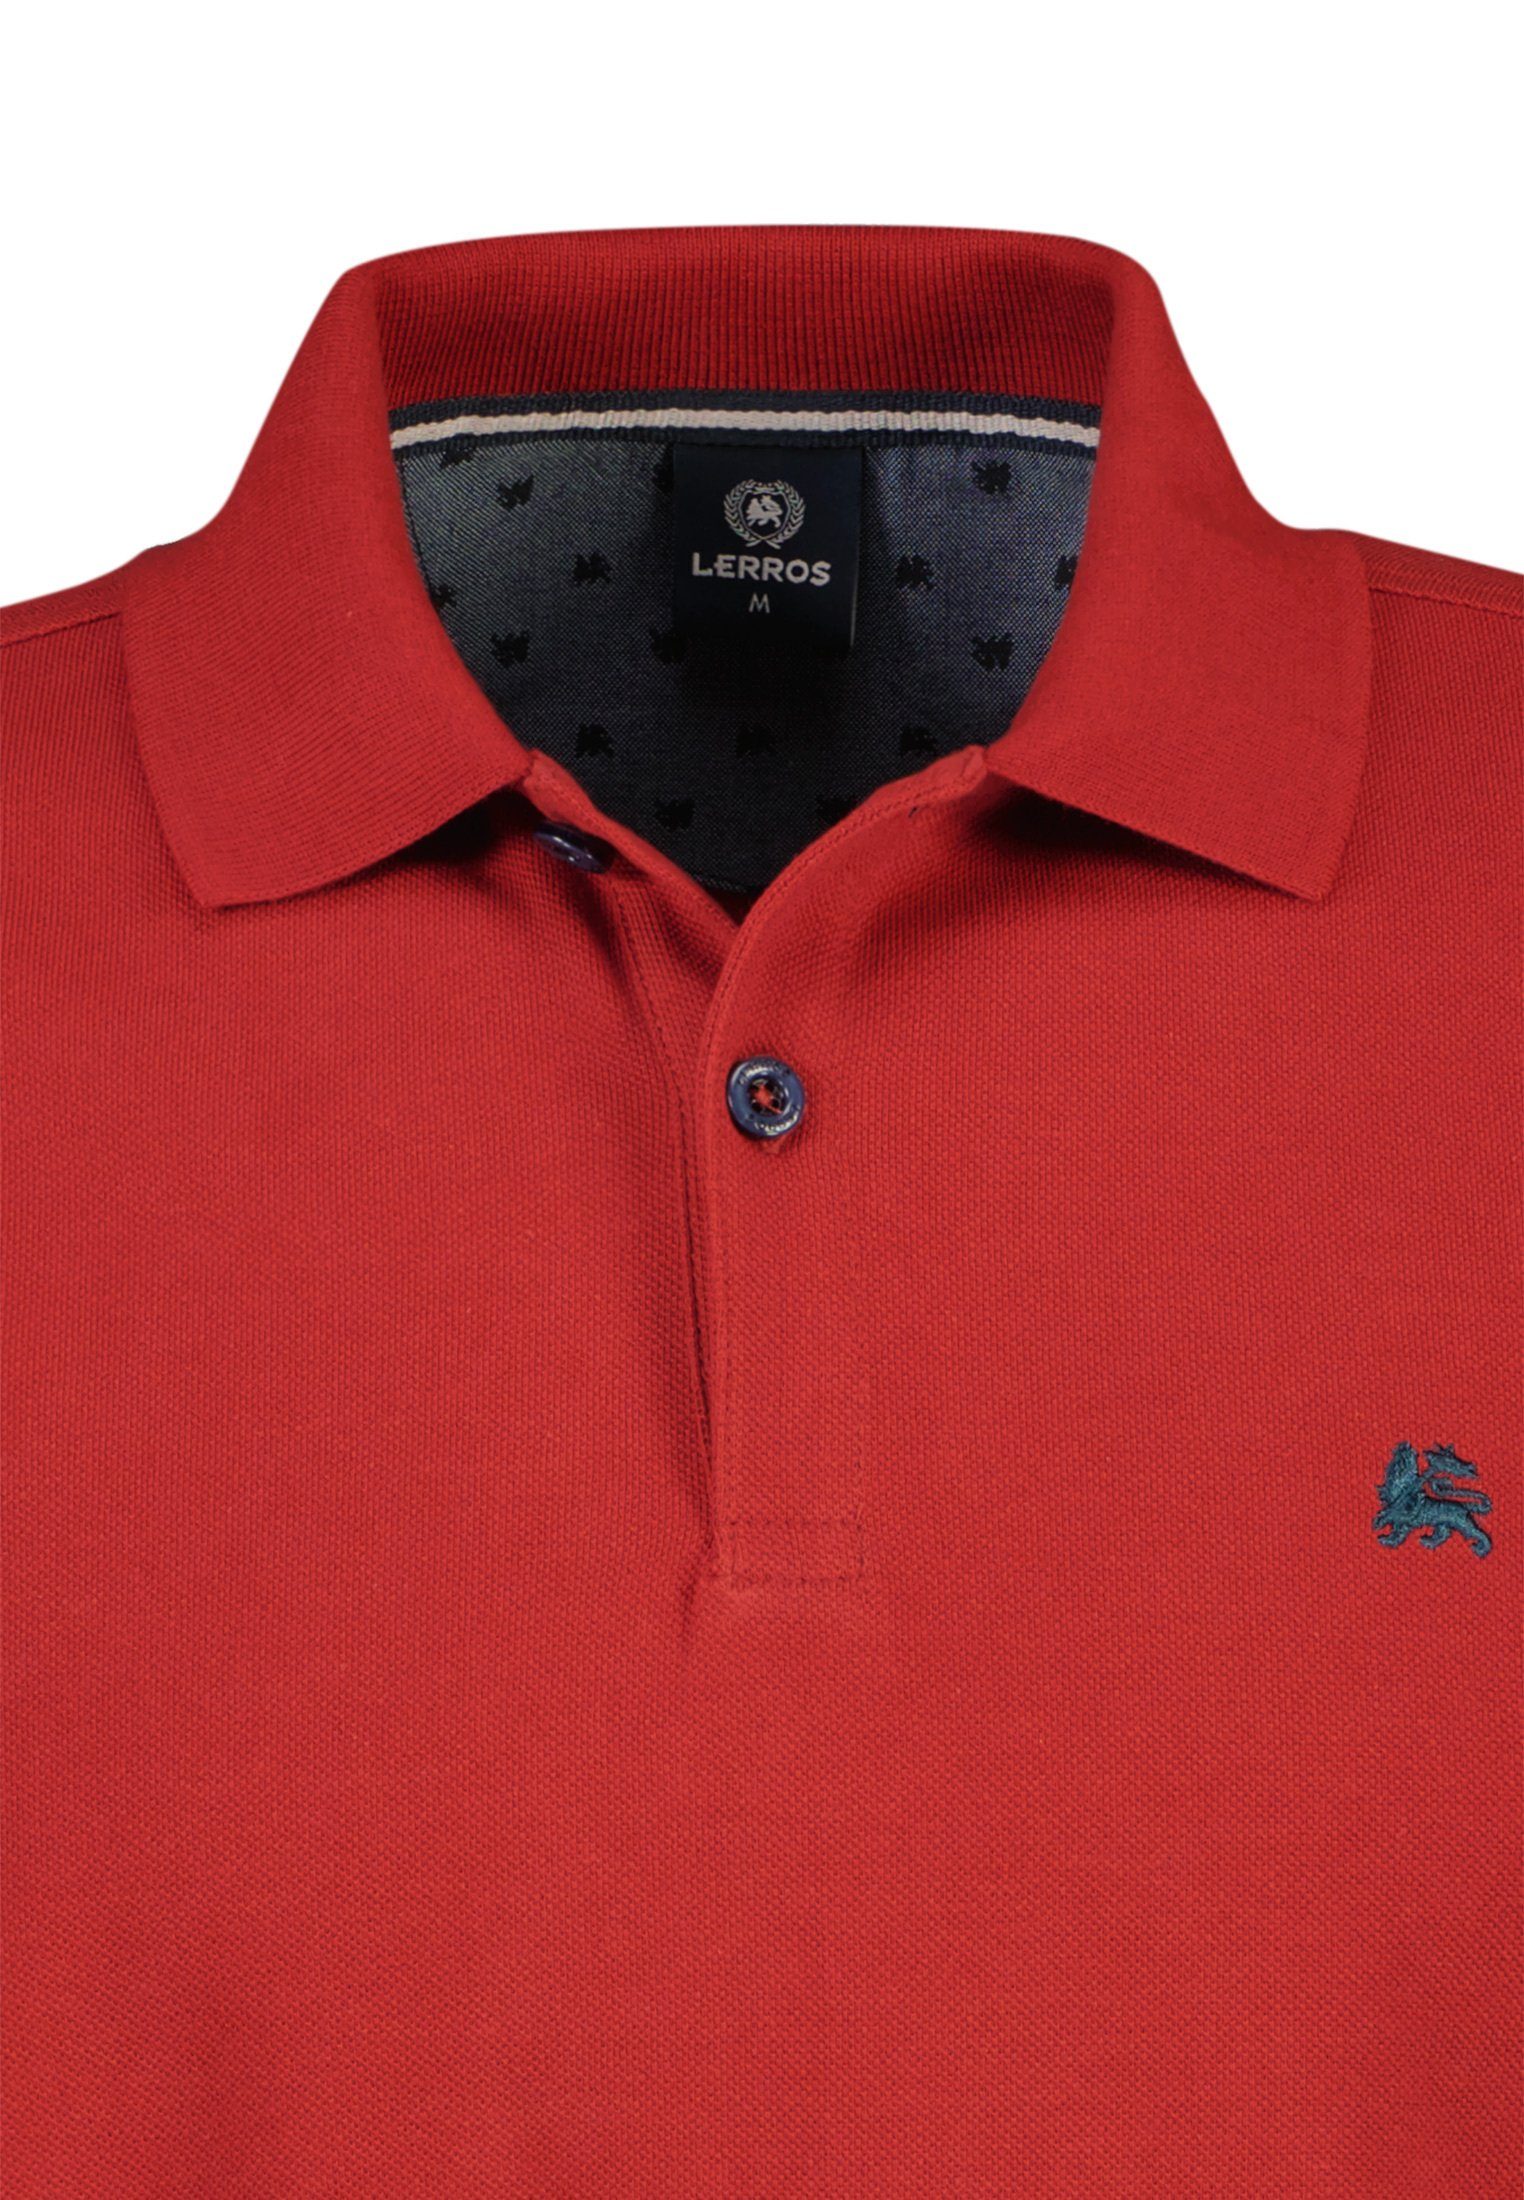 LERROS hochwertiger LERROS Poloshirt RED BCI Piqué-Baumwollqualität, in Poloshirt RUSTY